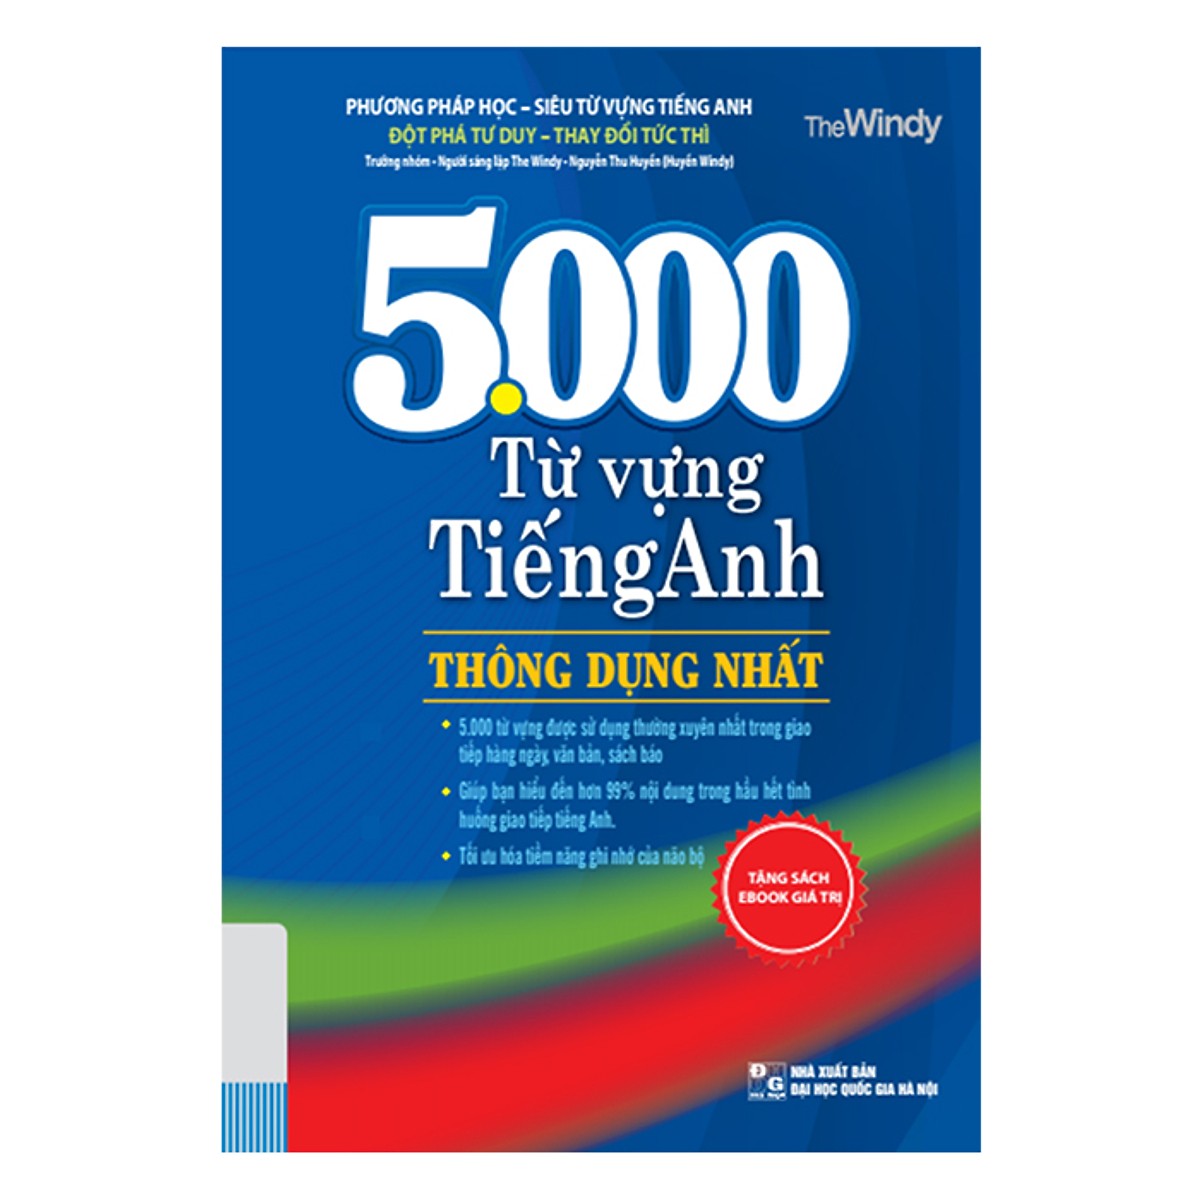 5000 Từ Vựng Tiếng Anh Thông Dụng Nhất (Tái Bản 2019 Tặng kèm bookmark)